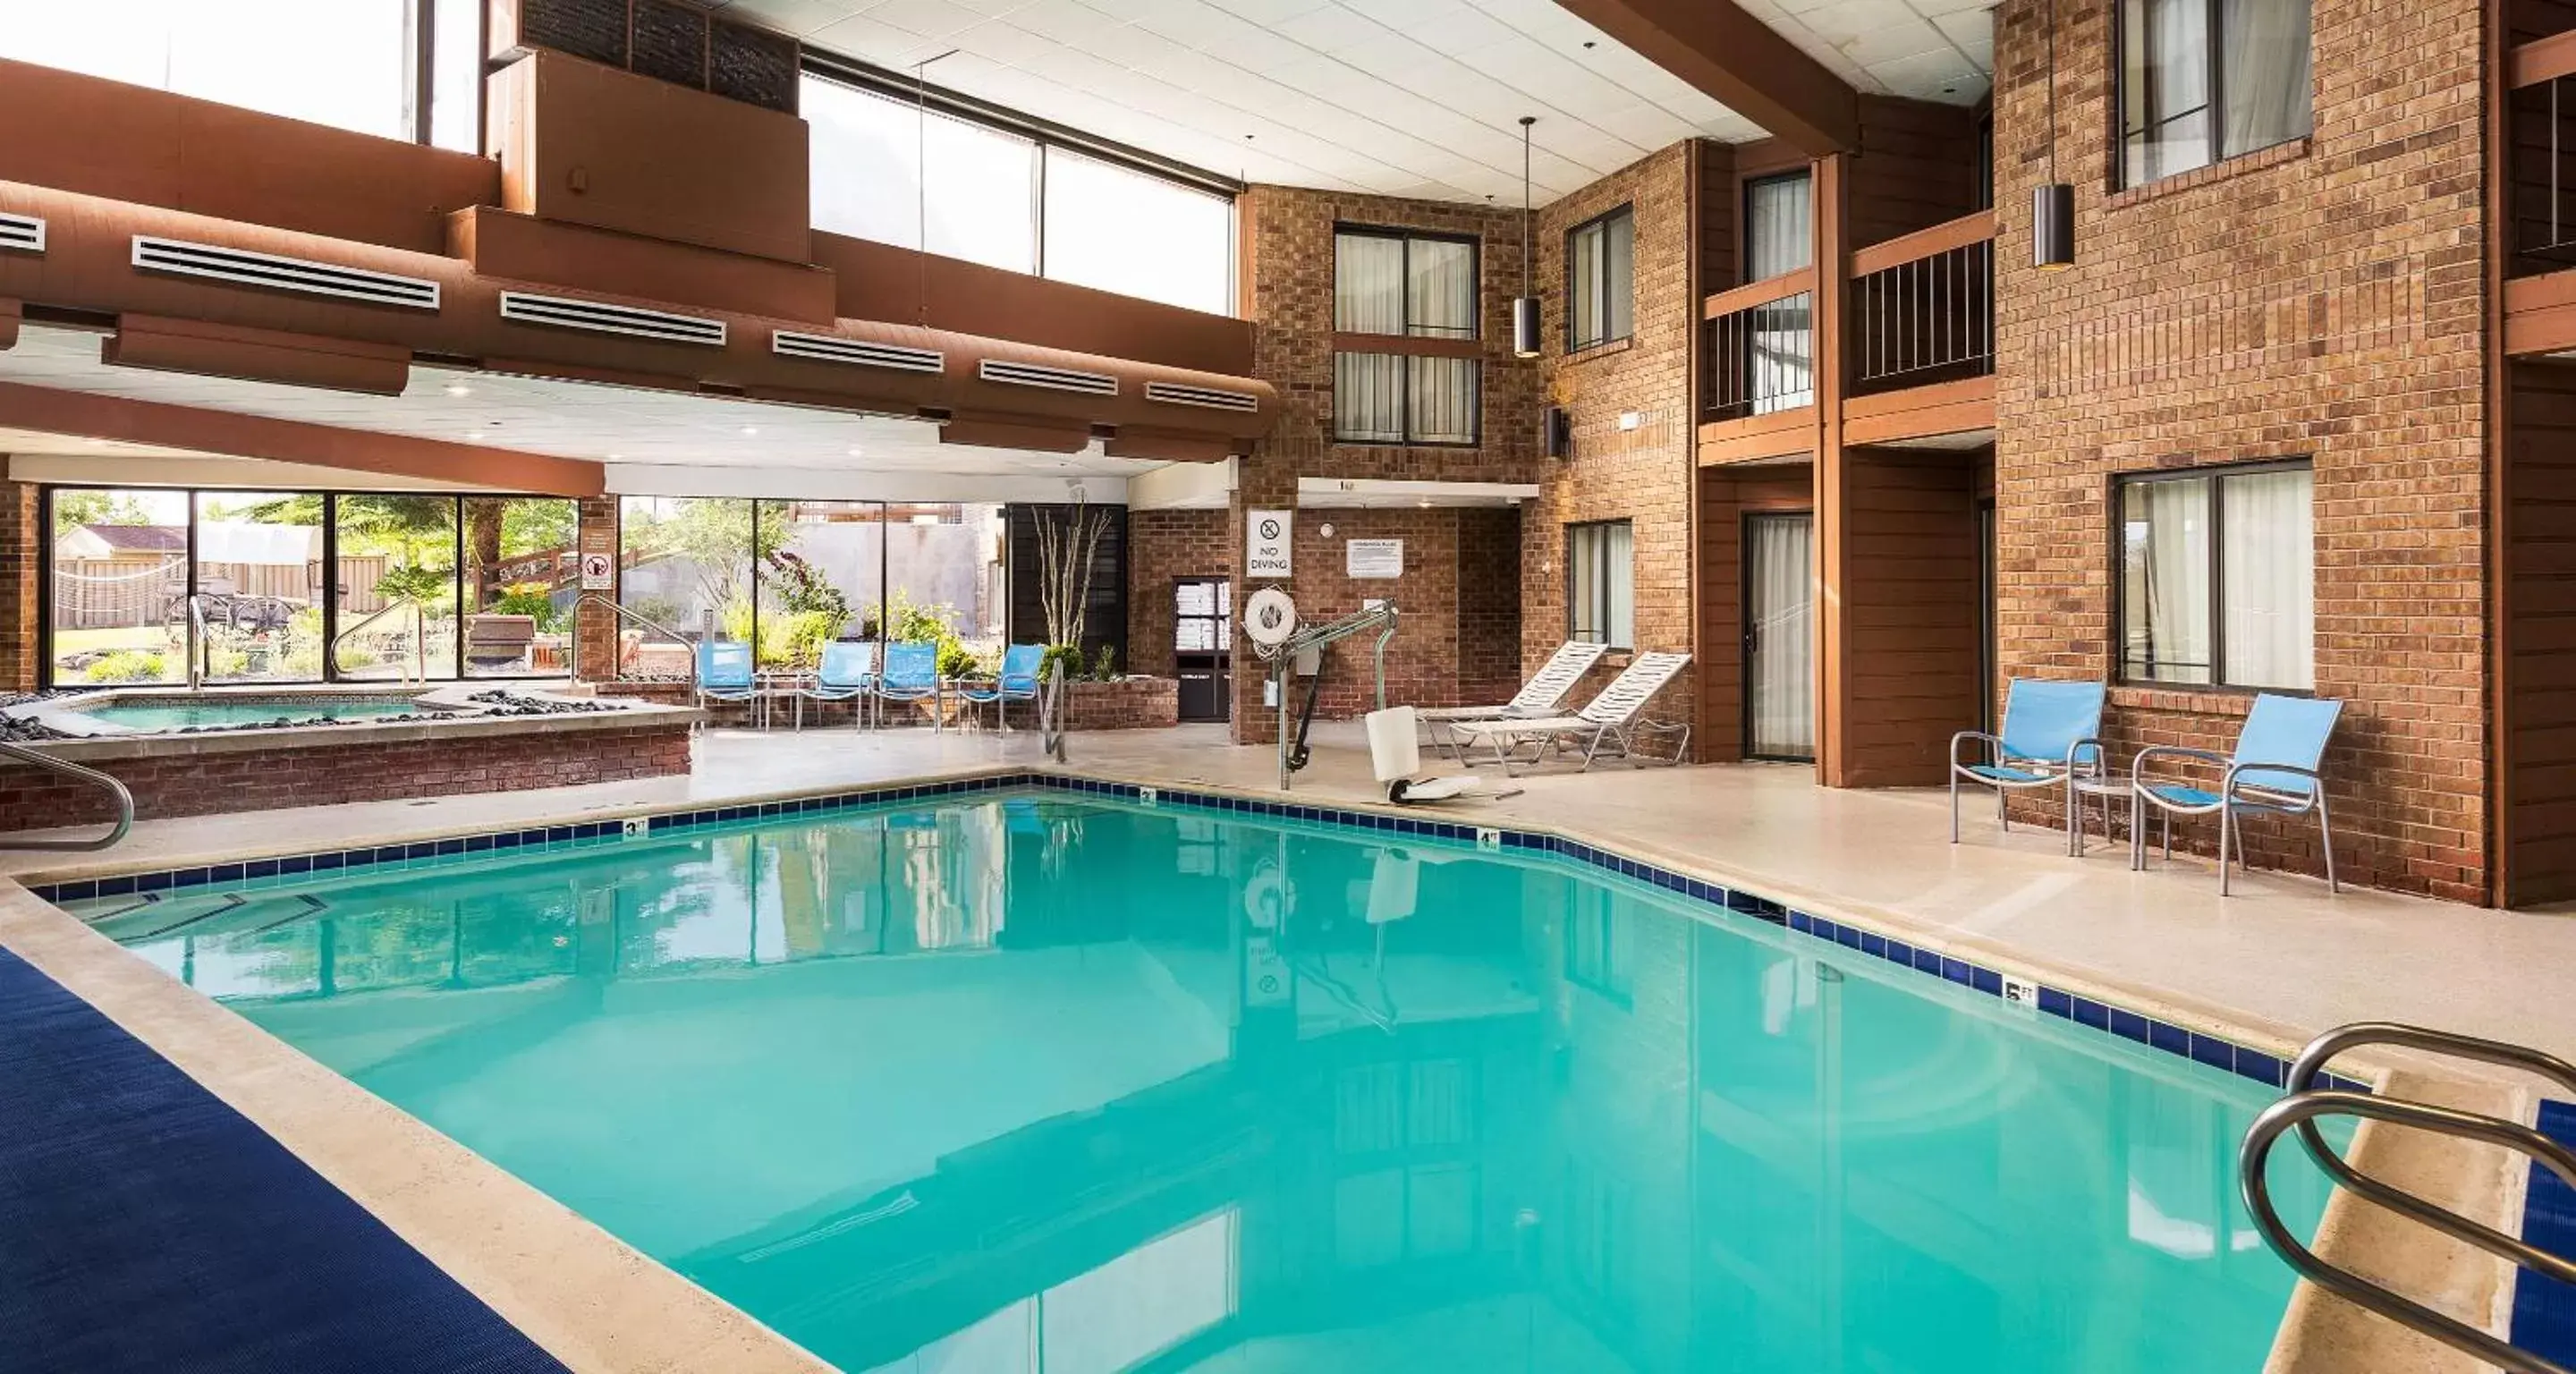 On site, Swimming Pool in Best Western Landmark Inn